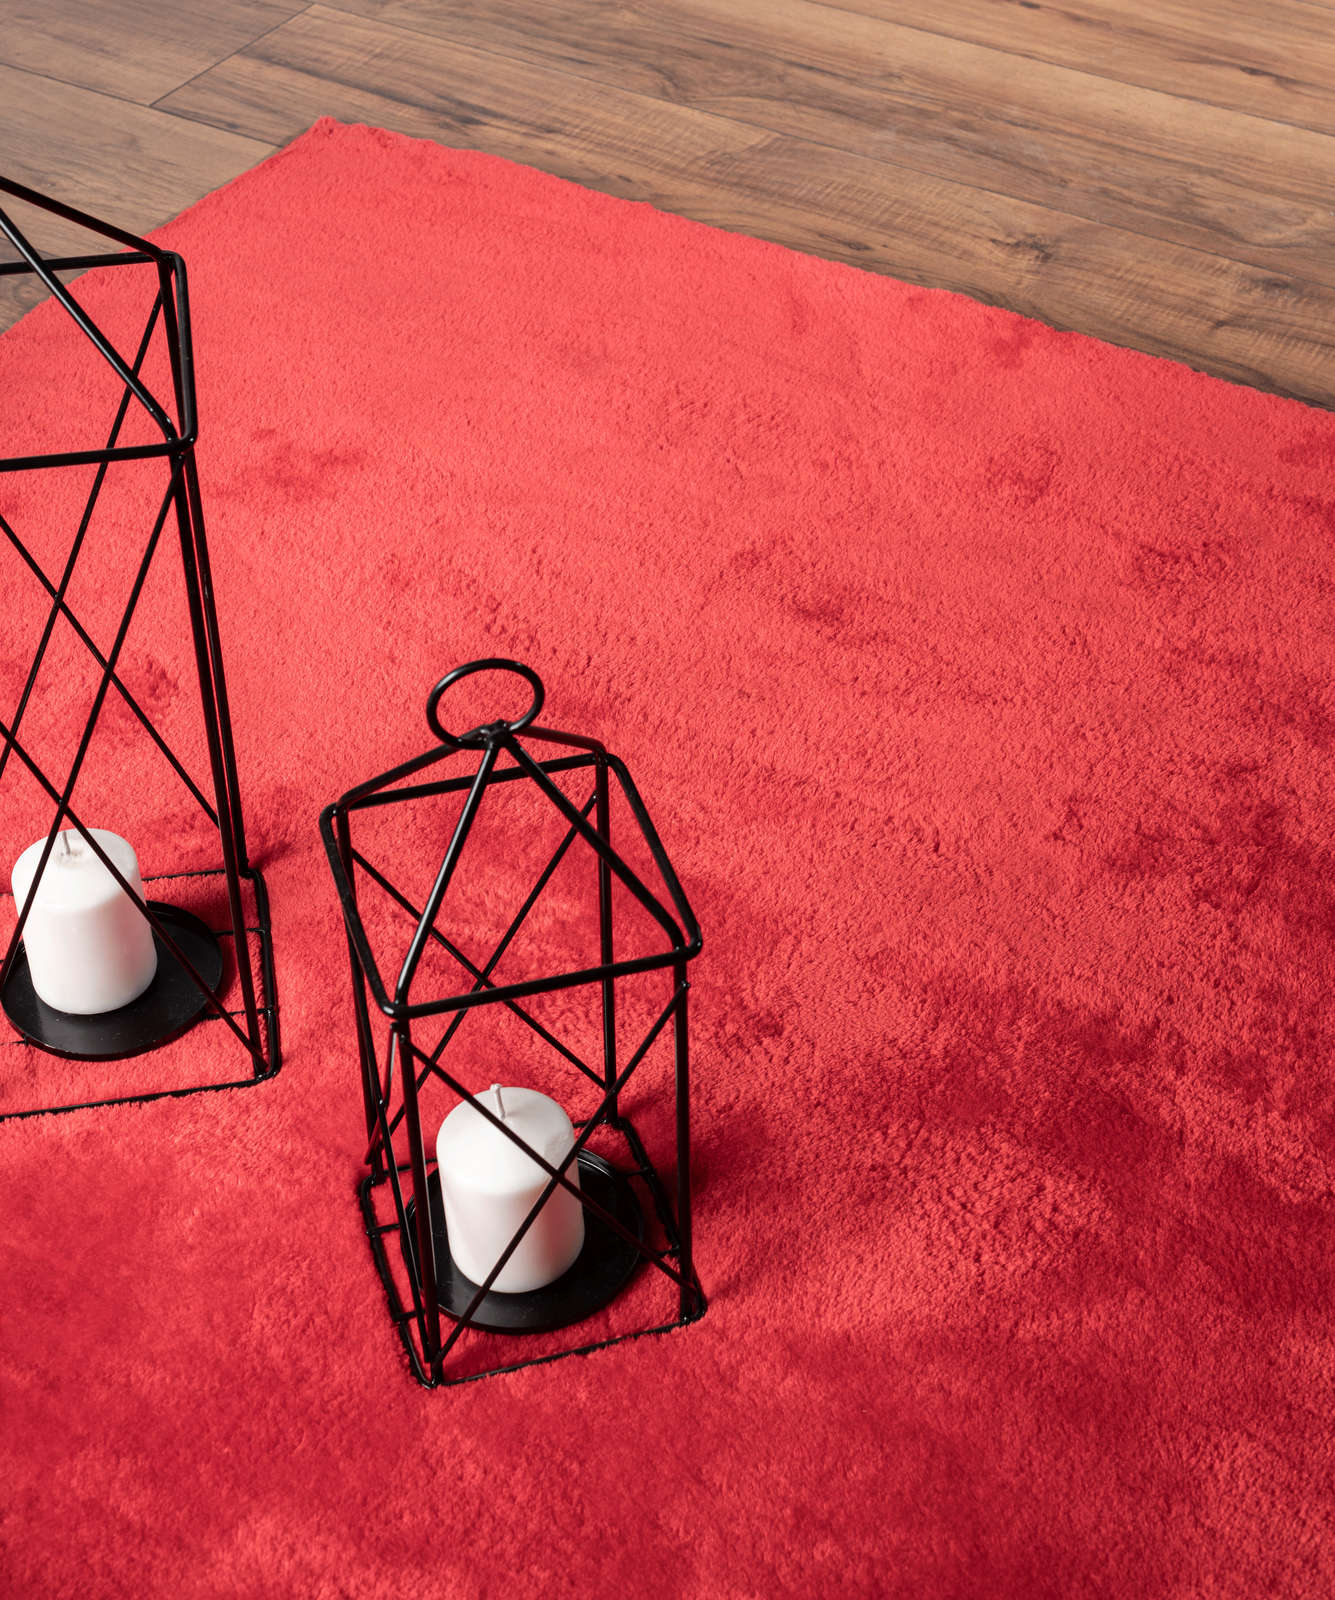             Extra zacht hoogpolig tapijt in rood - 230 x 160 cm
        